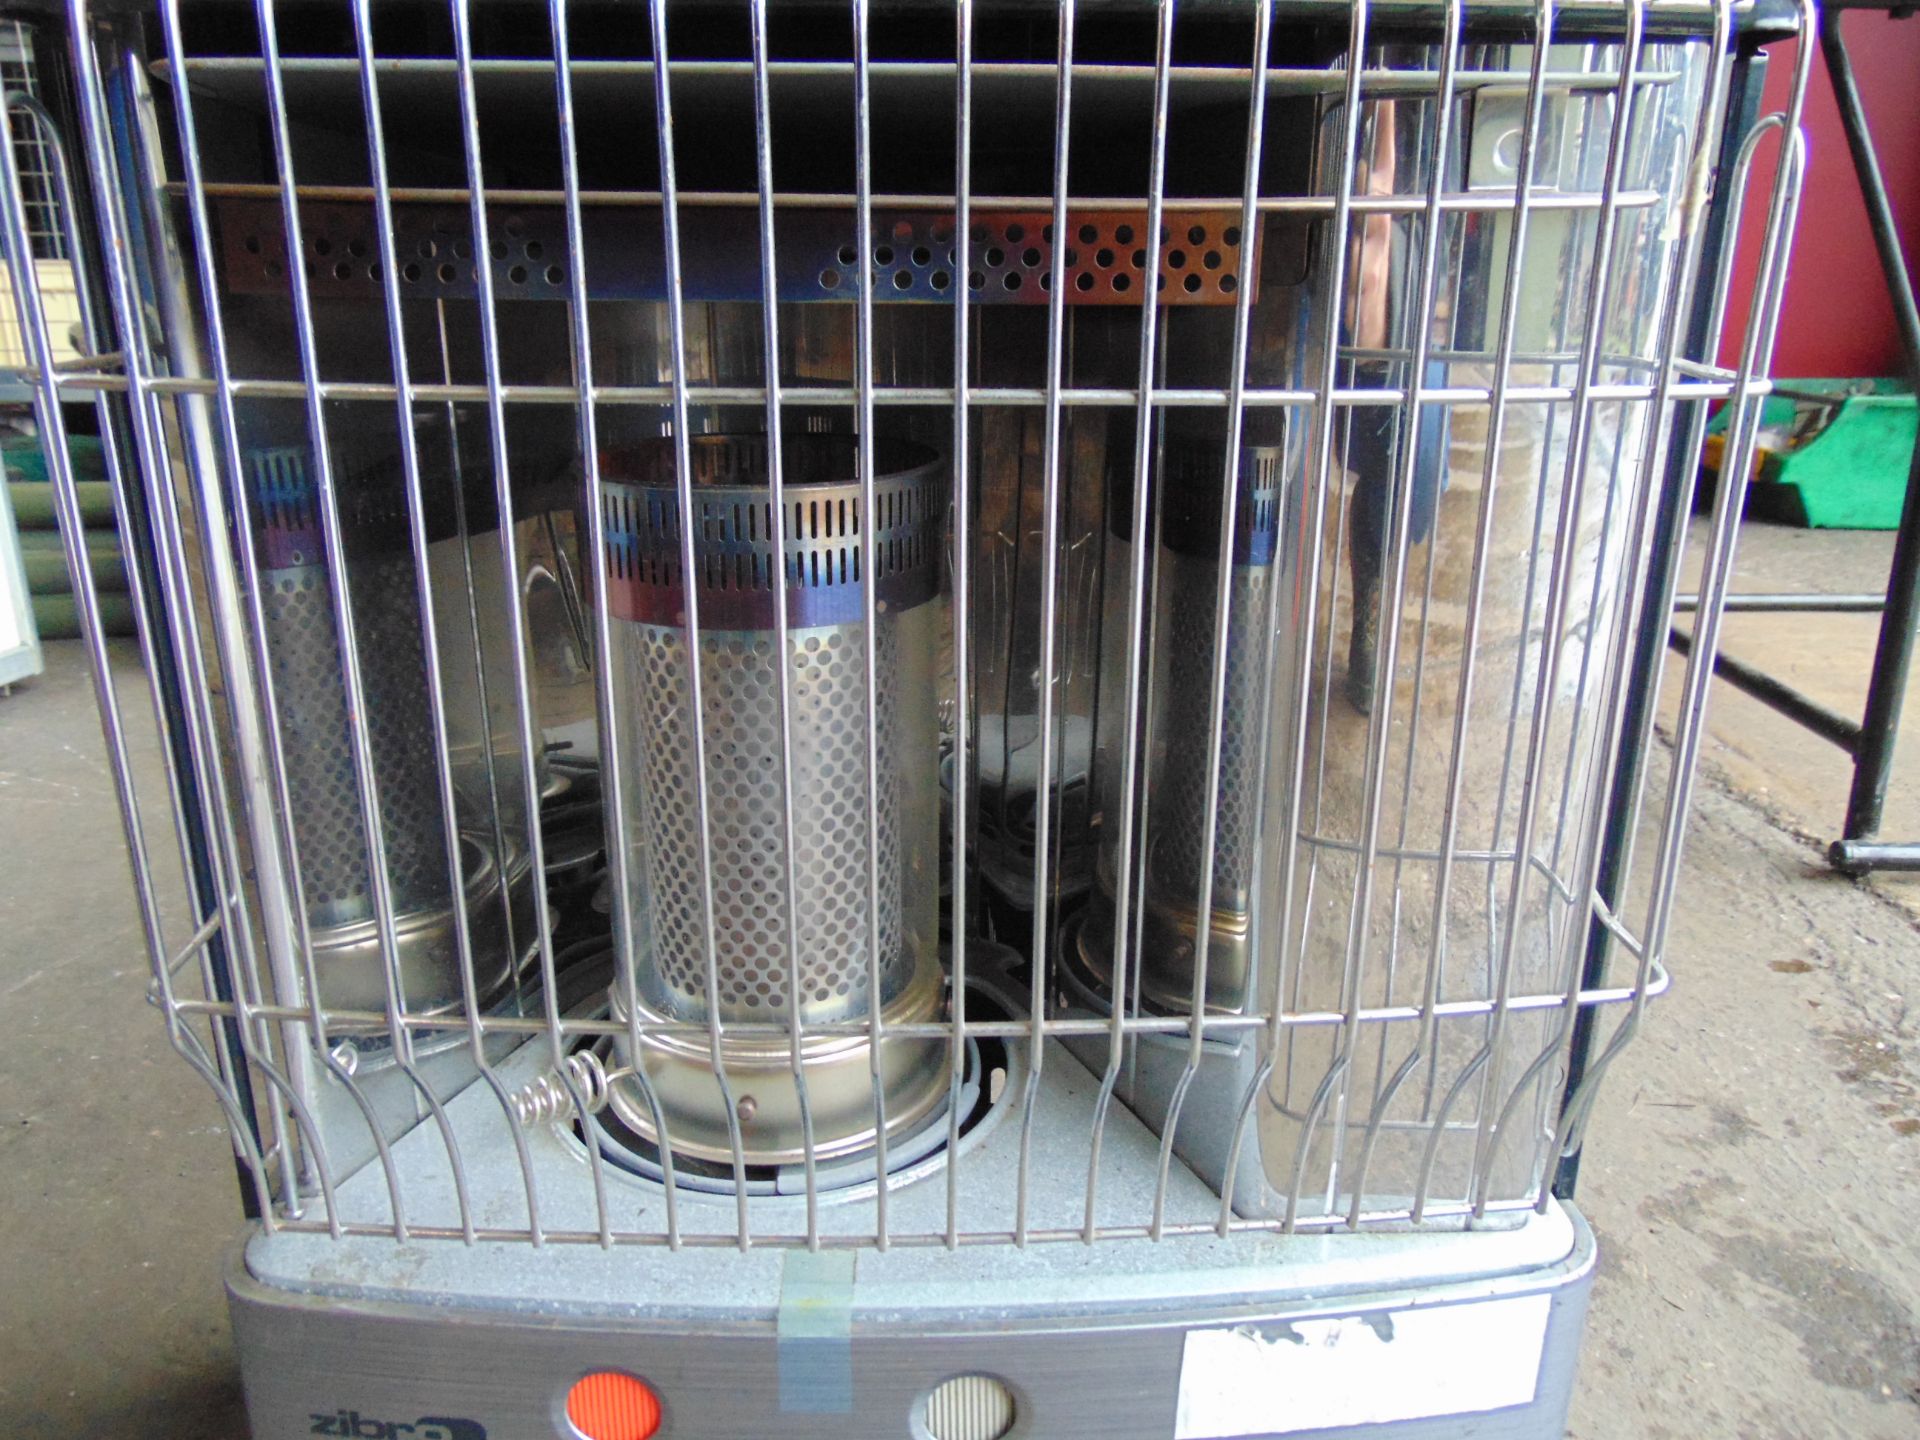 Zibro R15C Paraffin Heater - Image 2 of 7